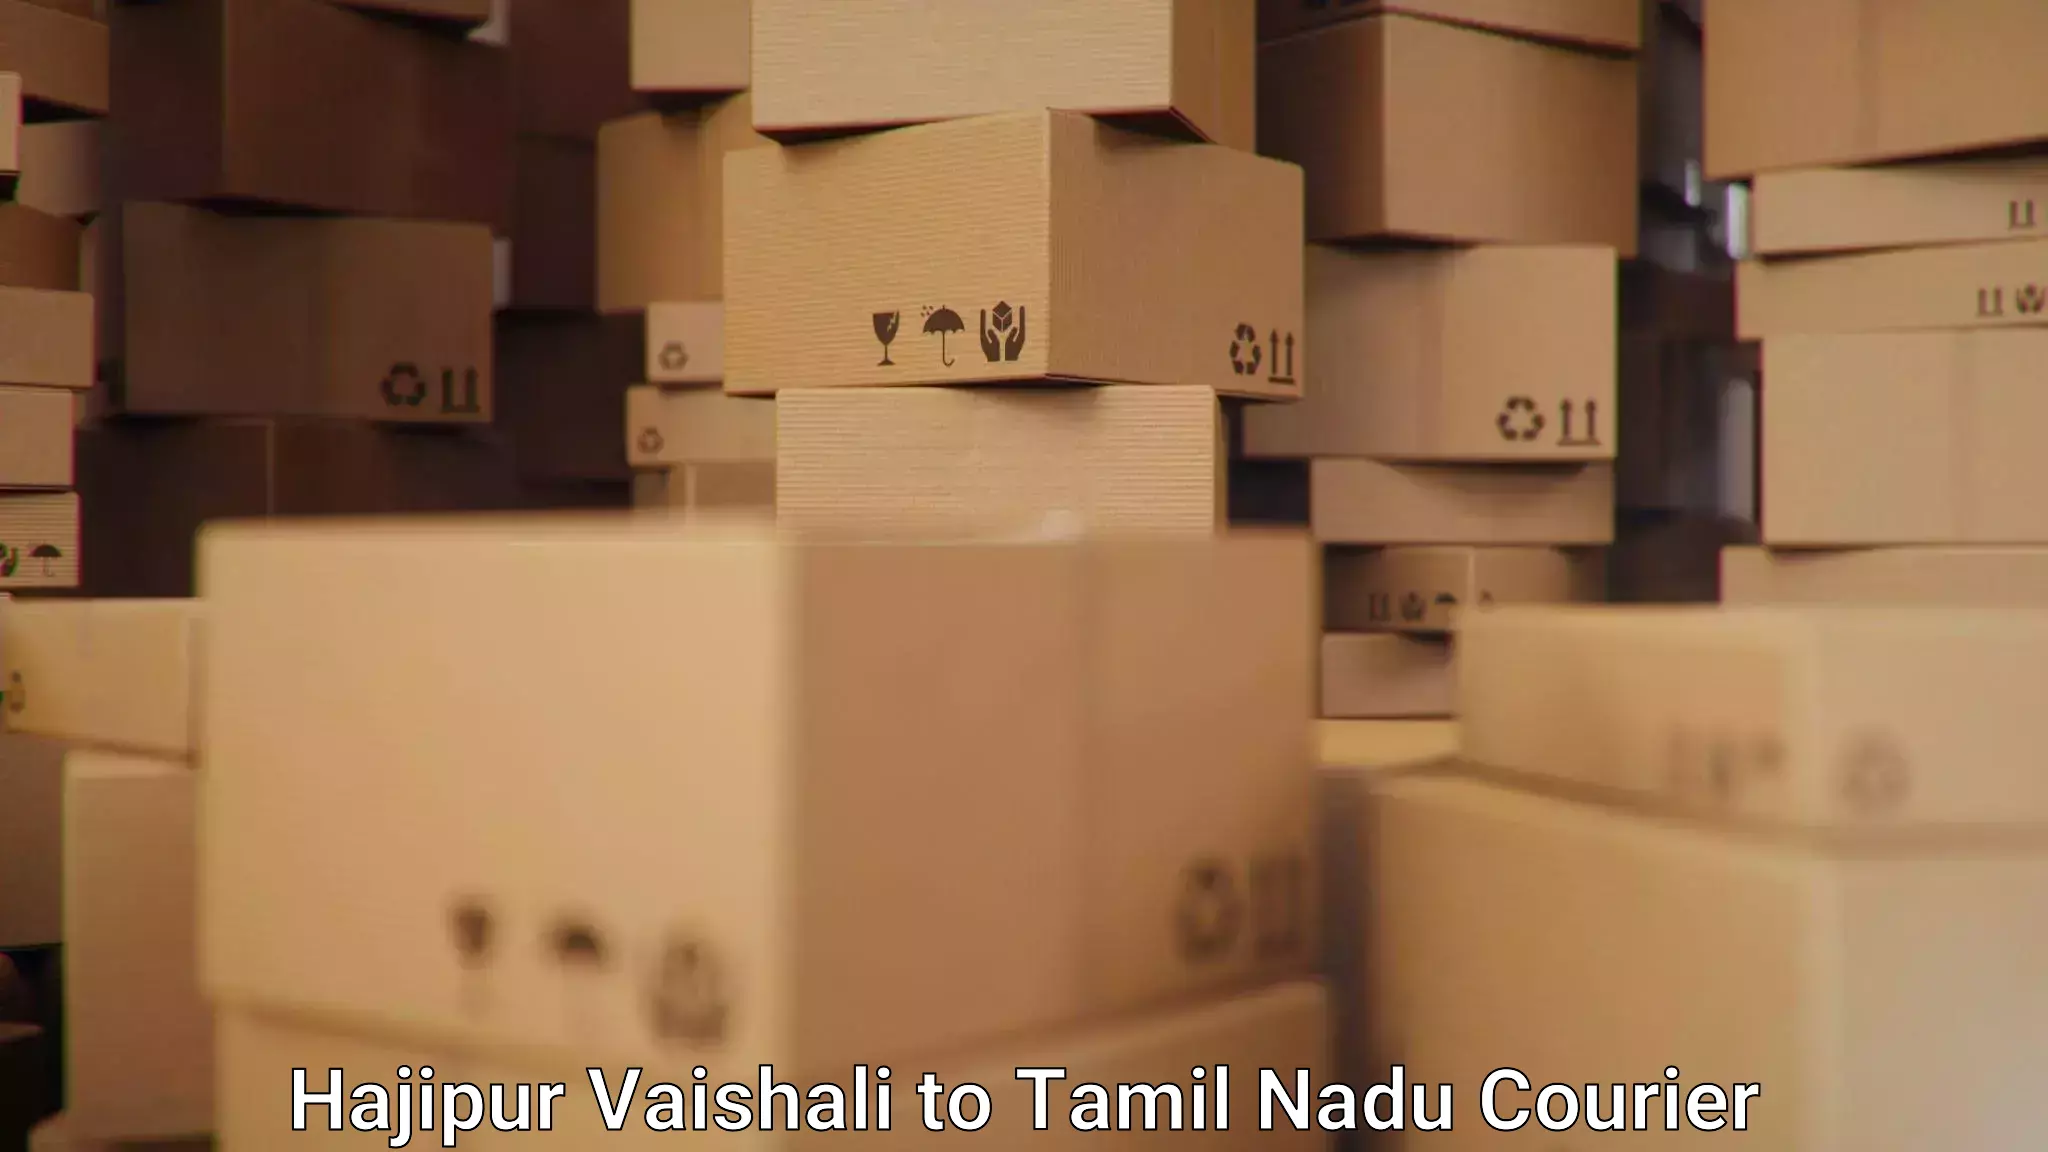 Global parcel delivery Hajipur Vaishali to Sholinghur